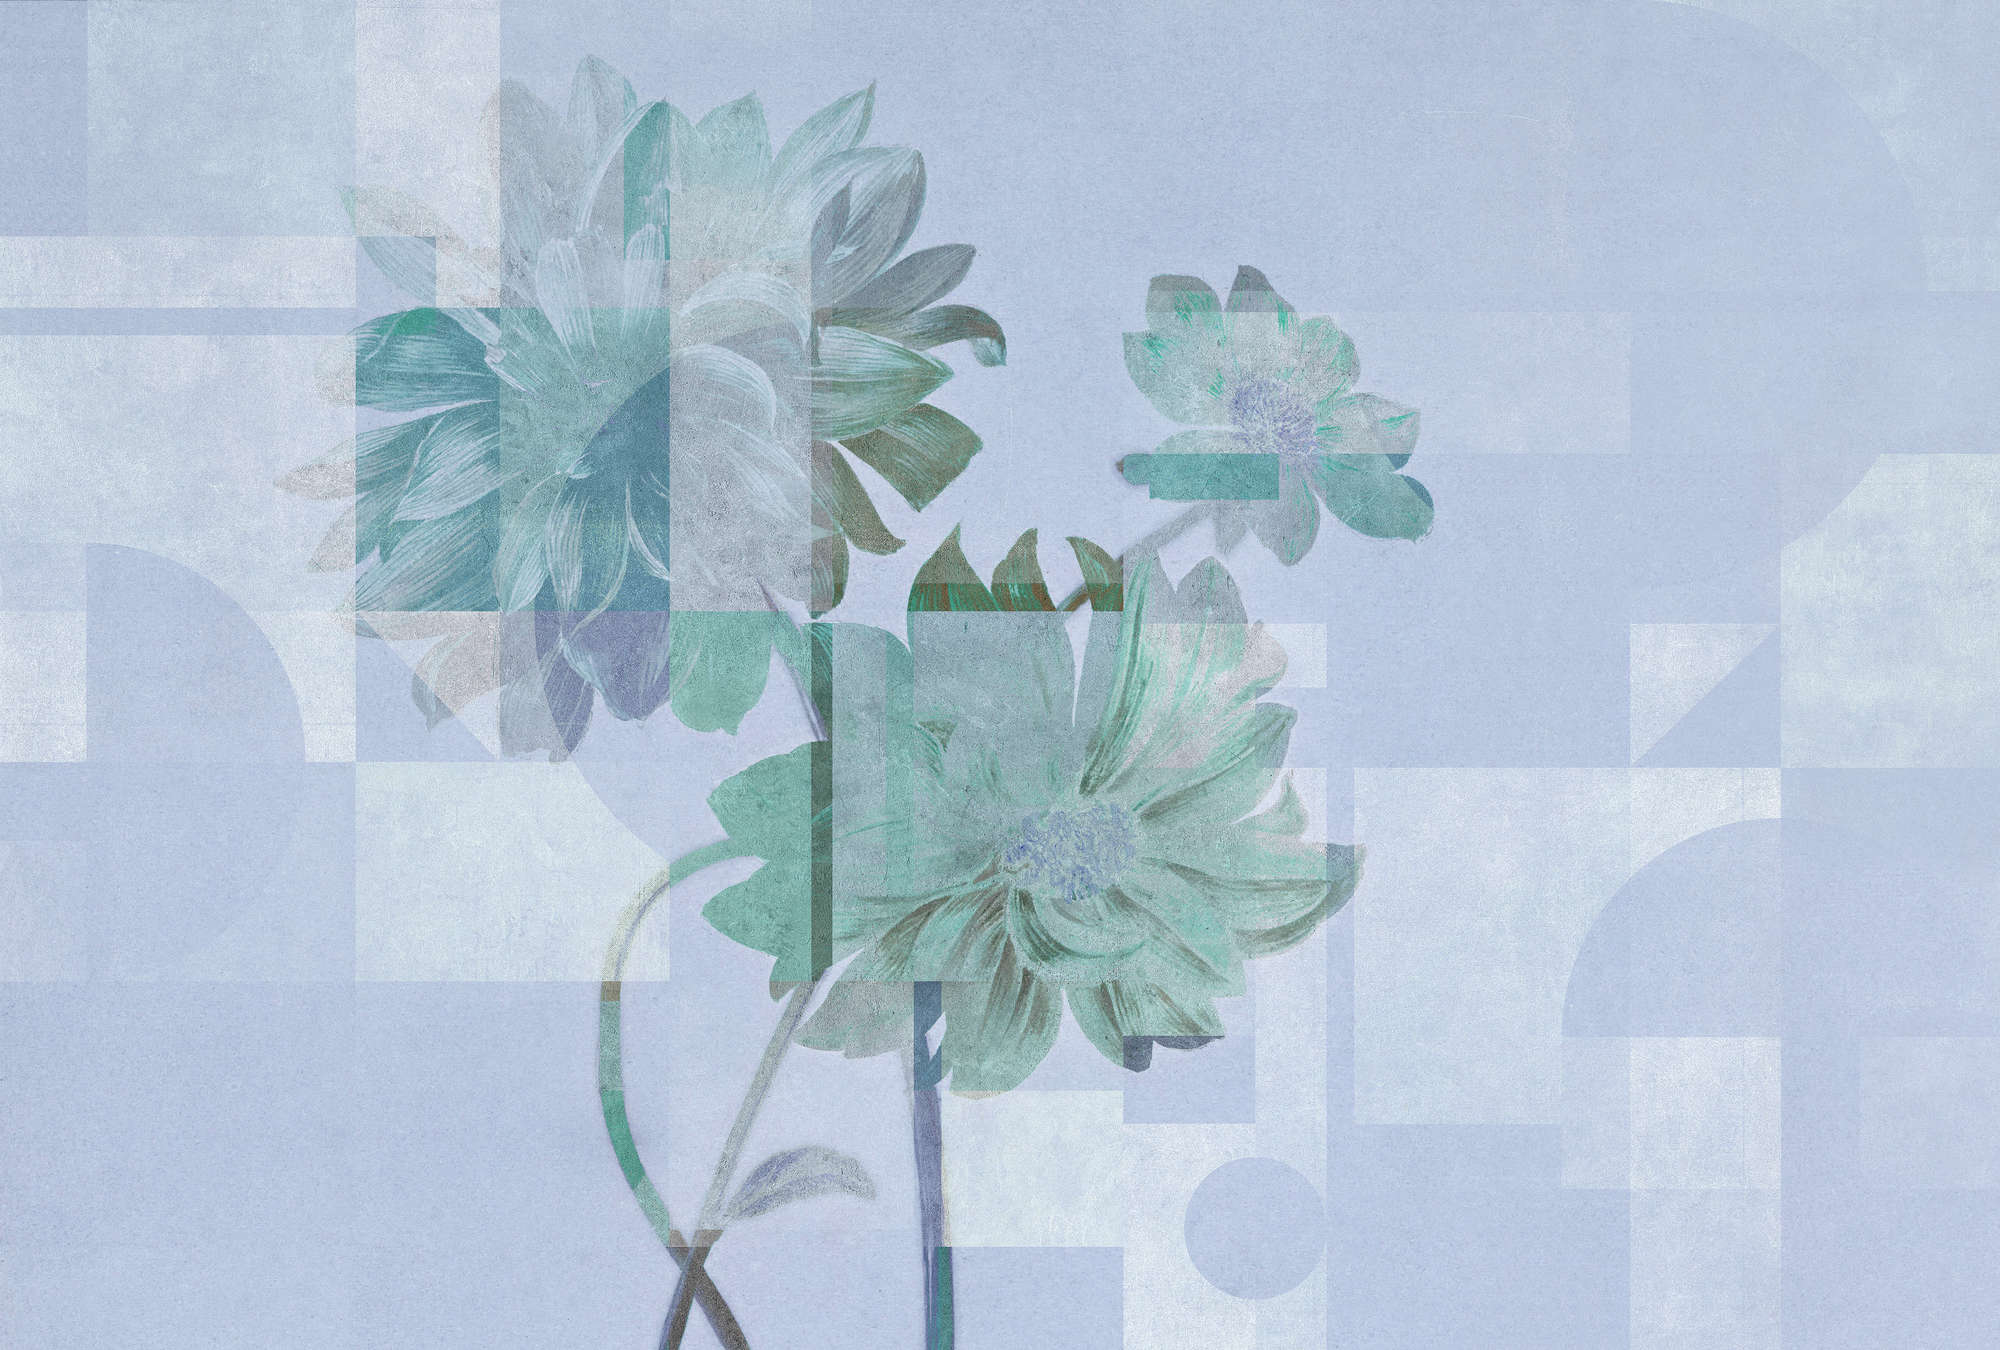             Jardín de las reinas 1 - Papel pintado de flores margaritas azules y patrón gráfico
        